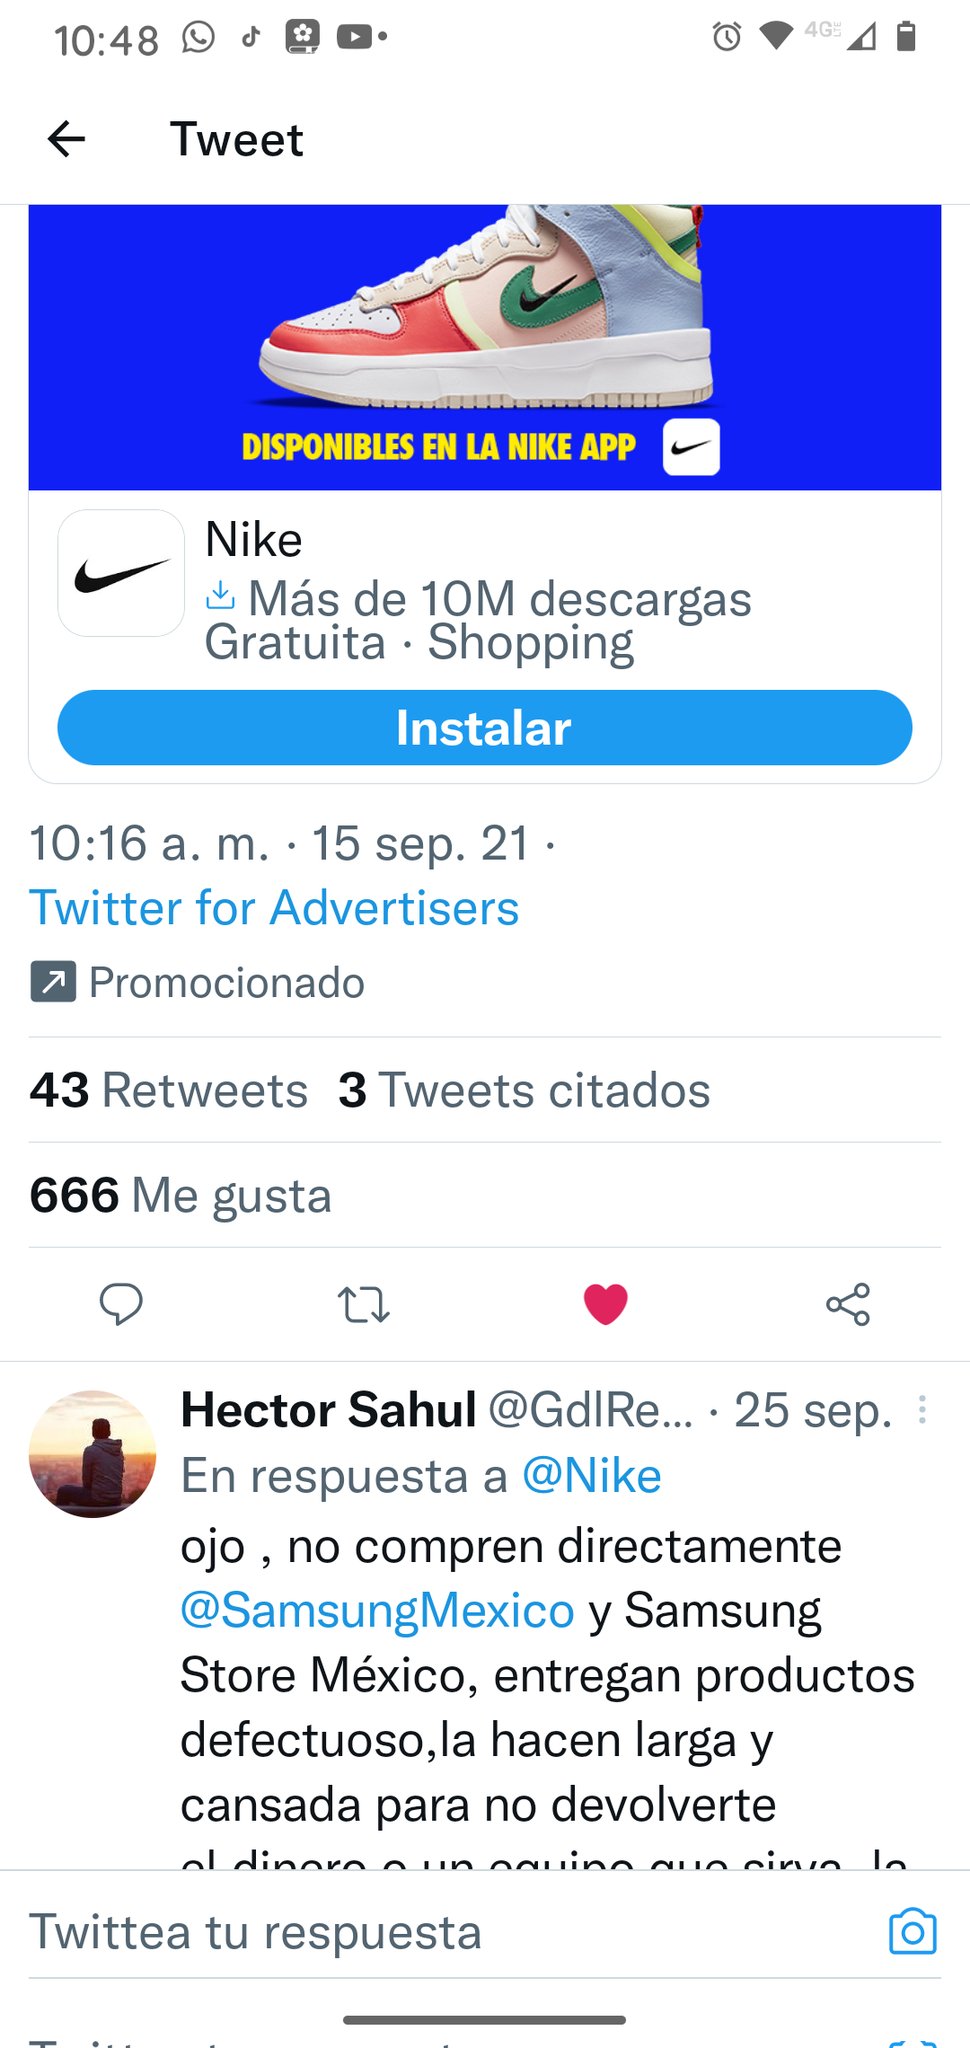 Nike on Twitter: "Lo mejor de Nike en un mismo lugar. Obtén acceso a productos exclusivos, envíos y más / Twitter